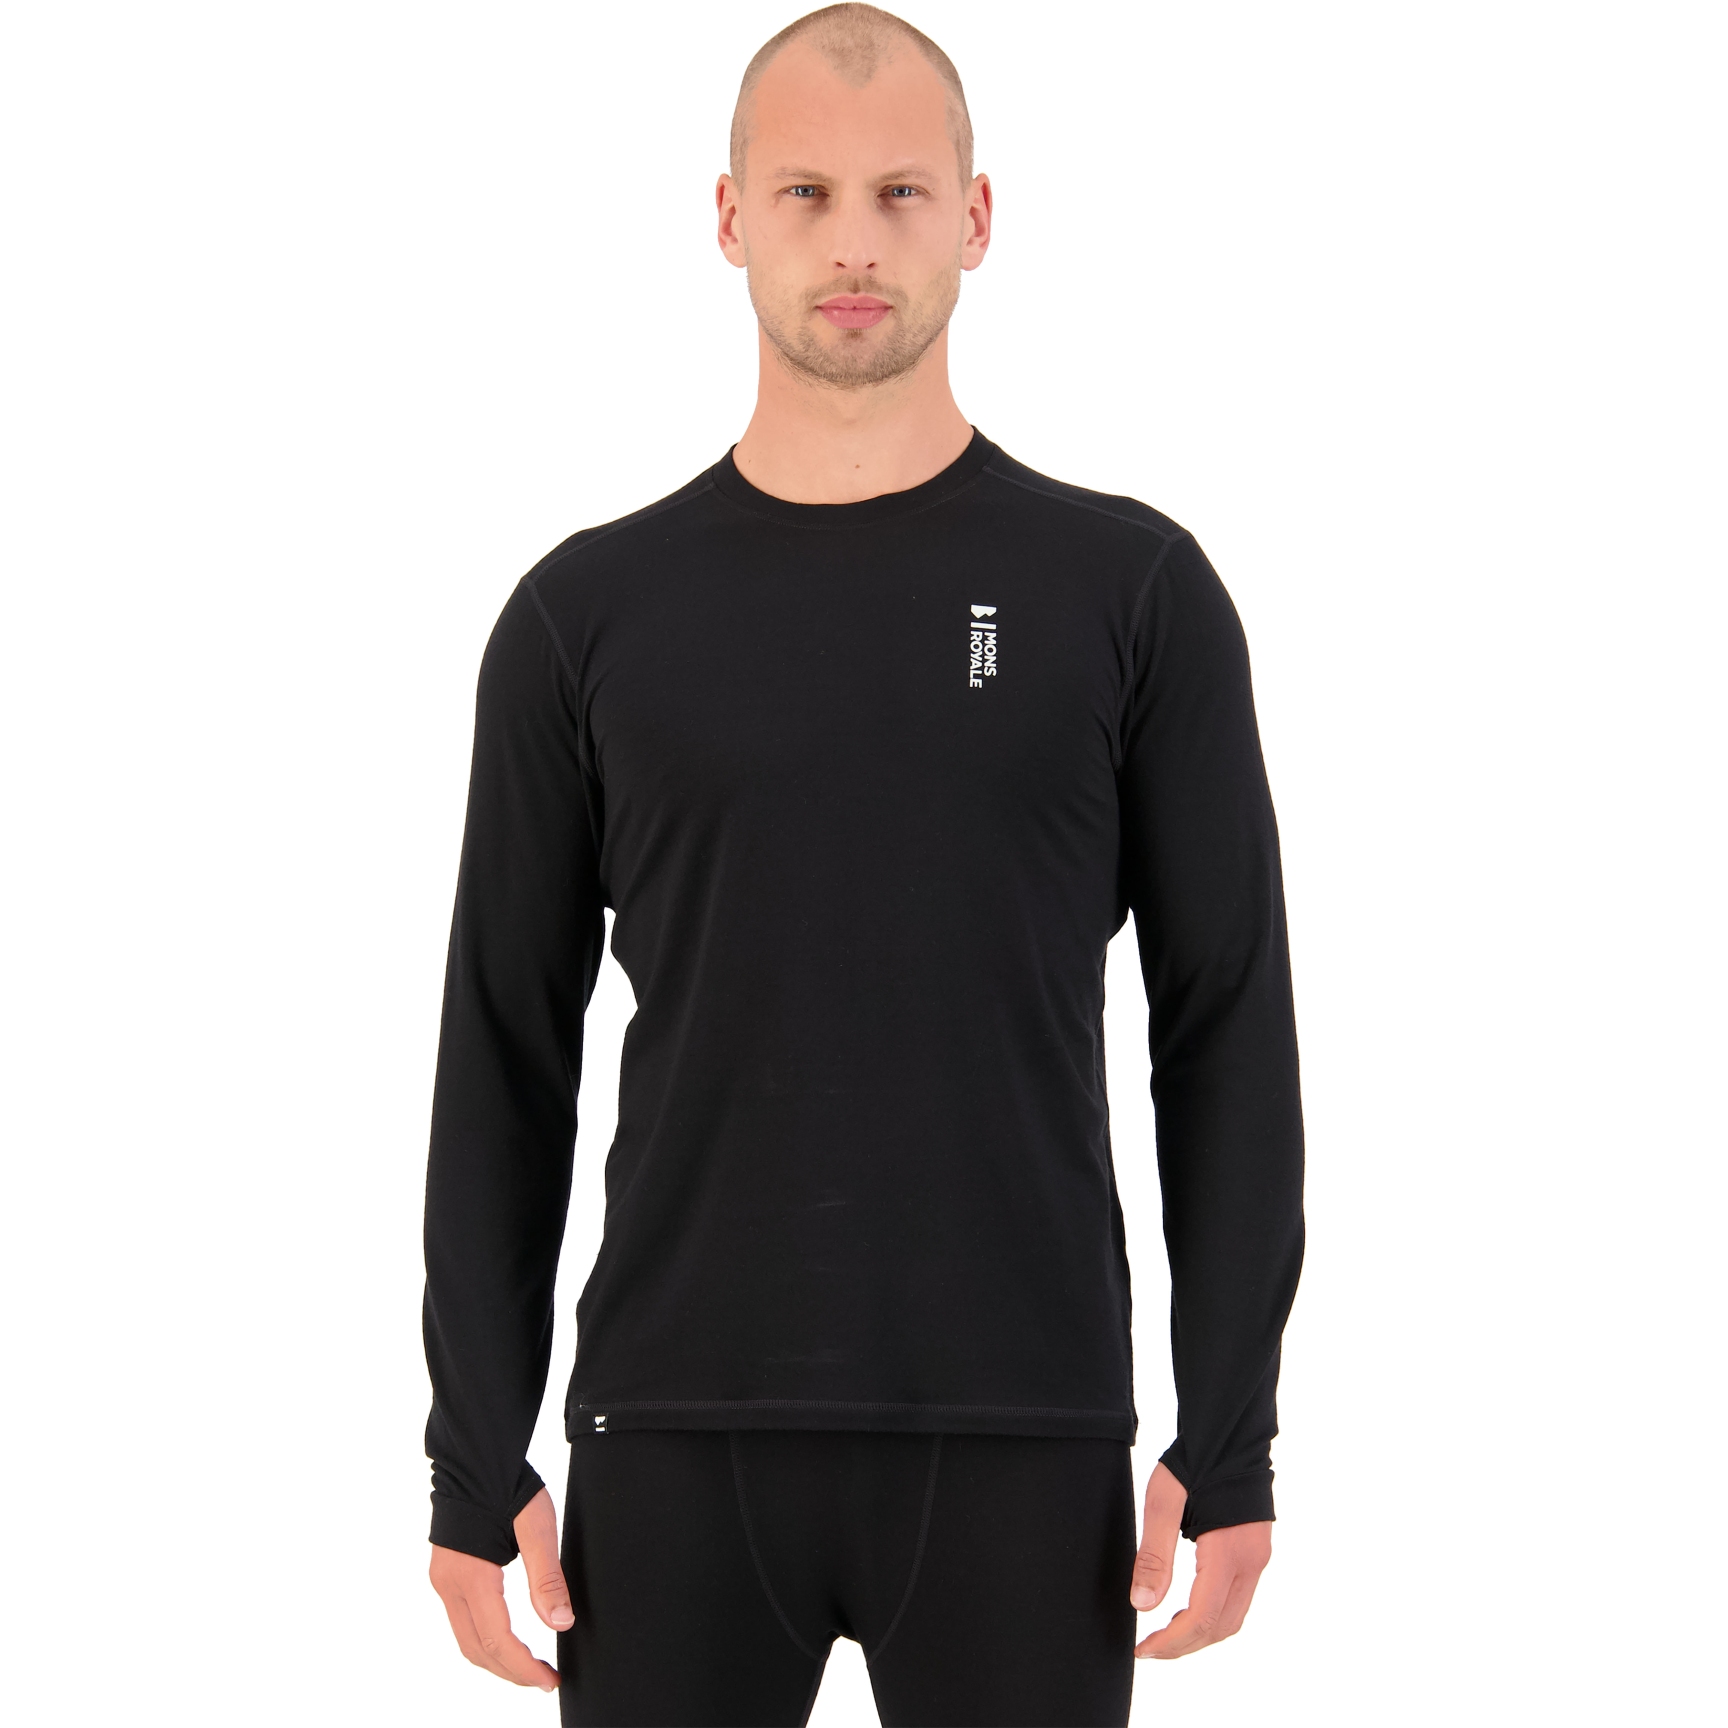 Produktbild von Mons Royale Cascade Merino Flex Langarmshirt - schwarz